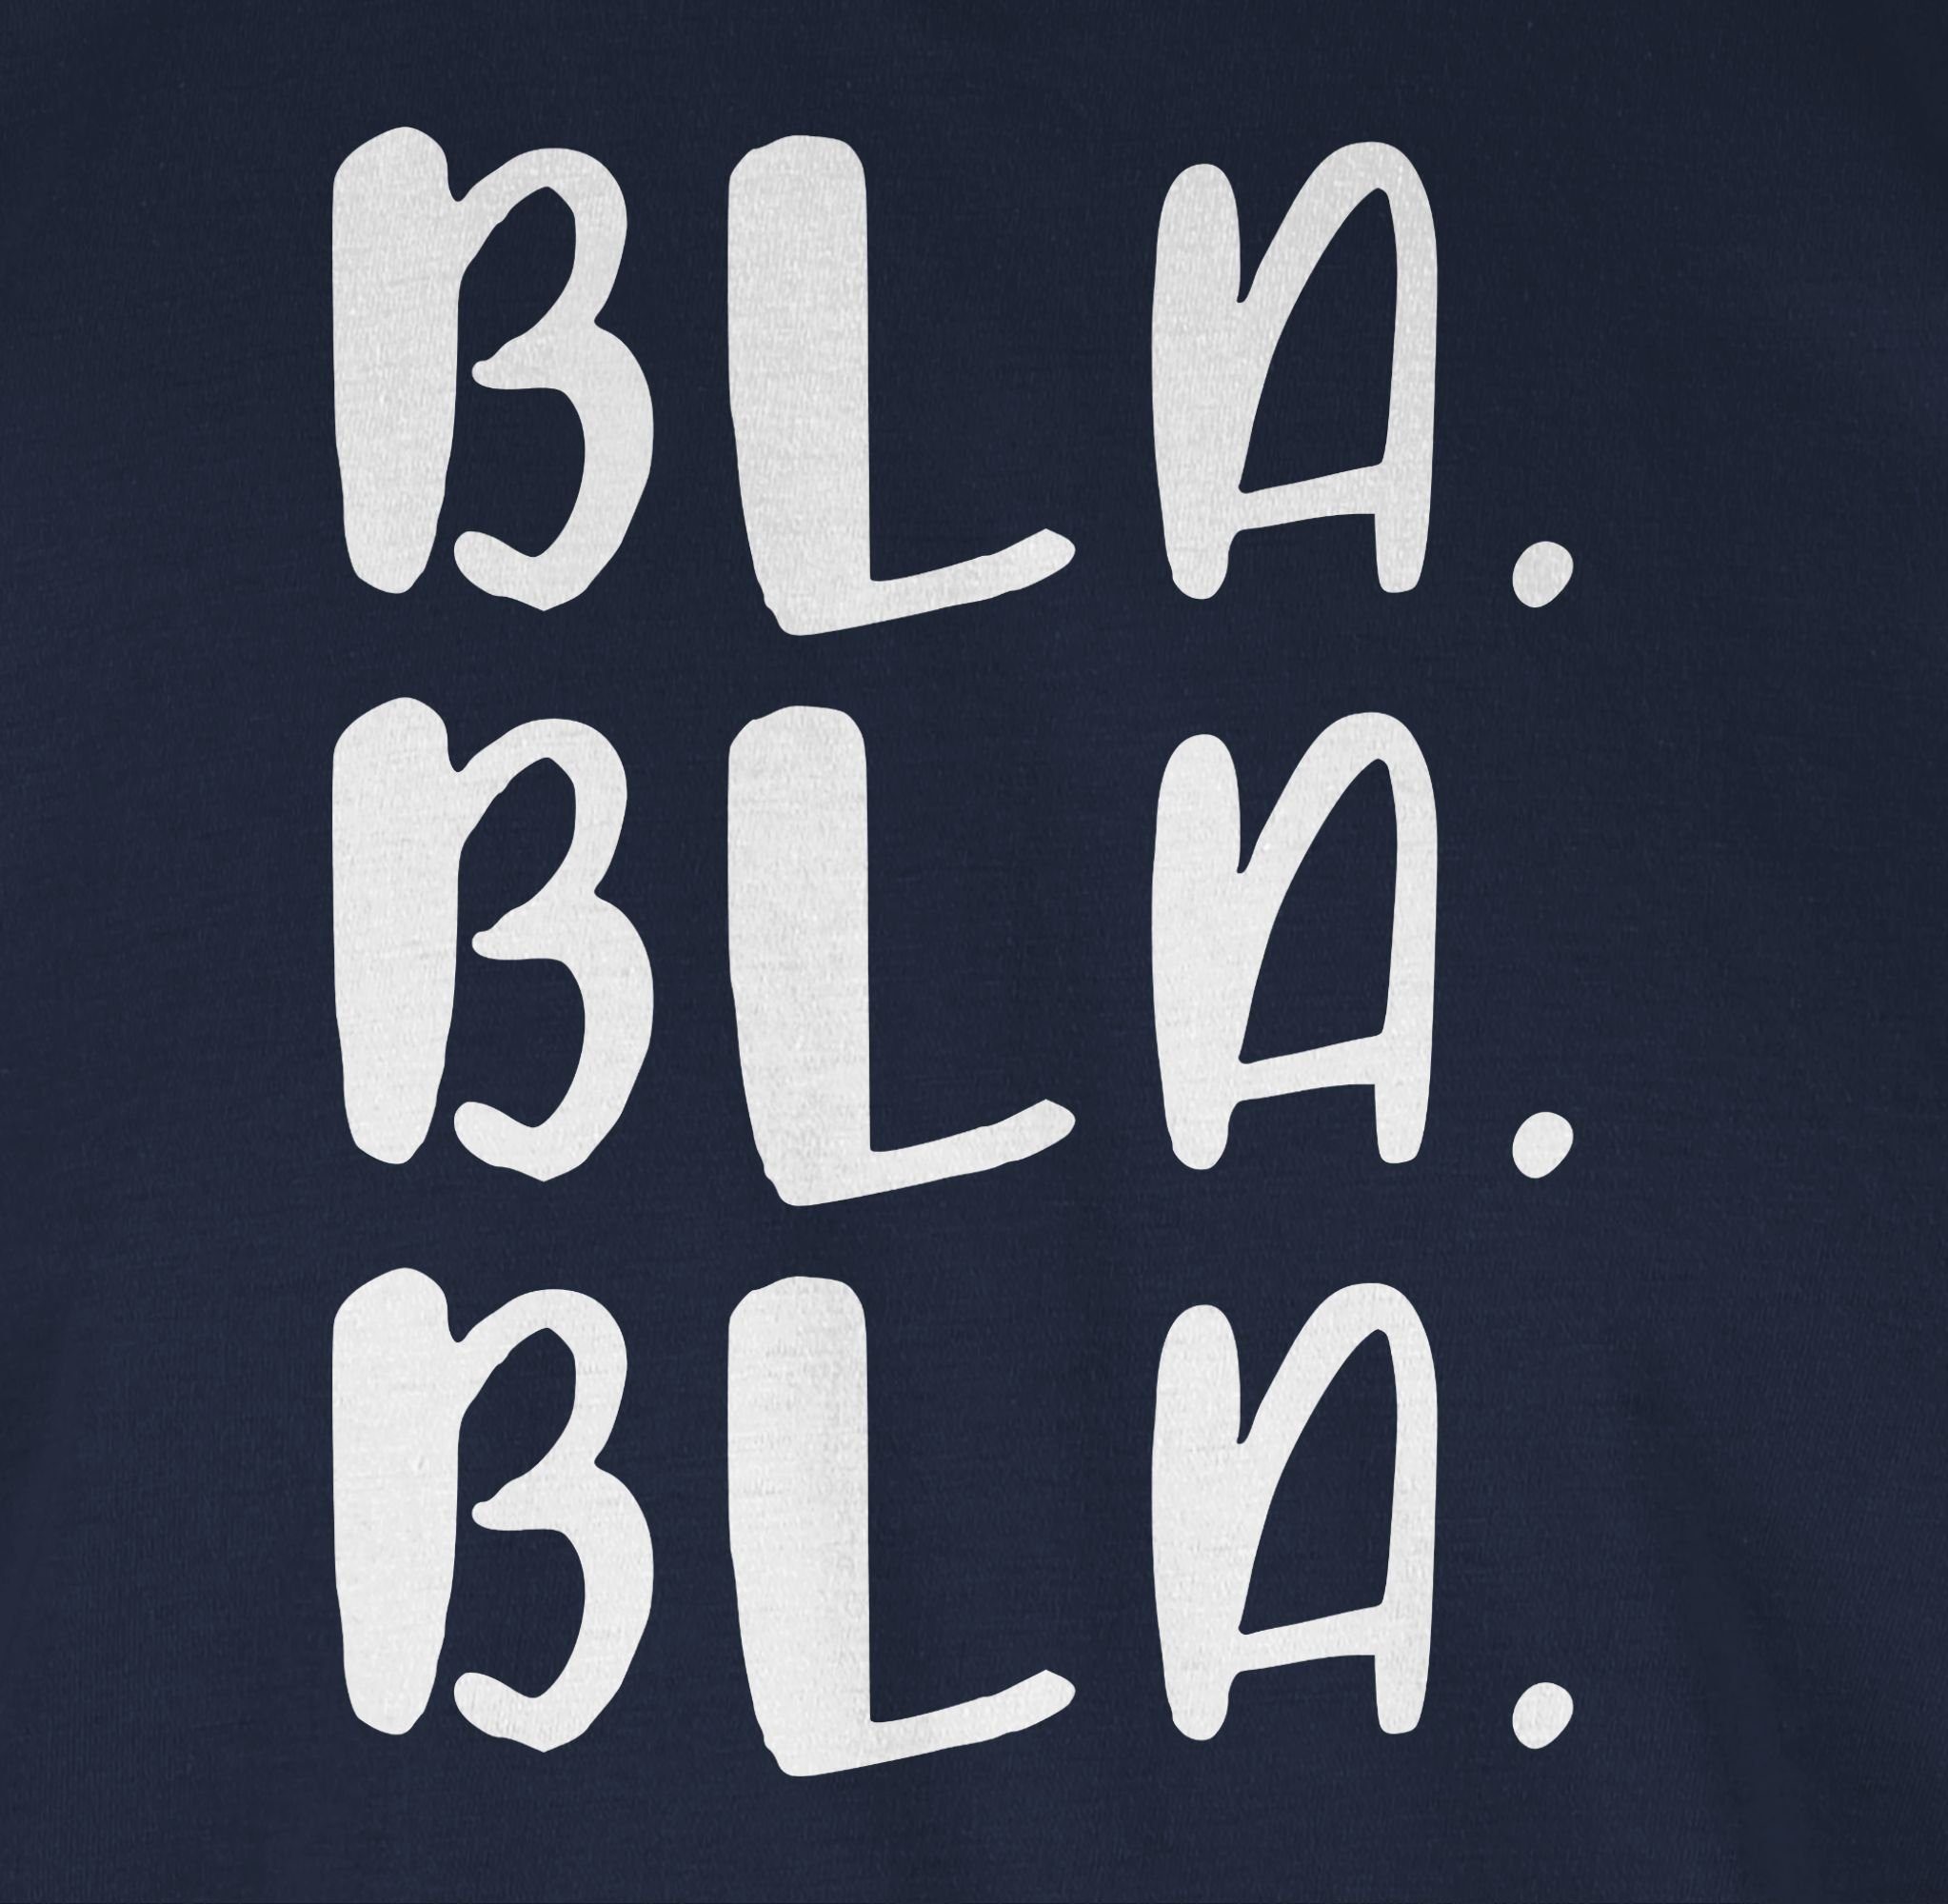 Shirtracer T-Shirt Bla Bla Bla Spruch mit Statement 02 - Sprüche weiß Blau Navy